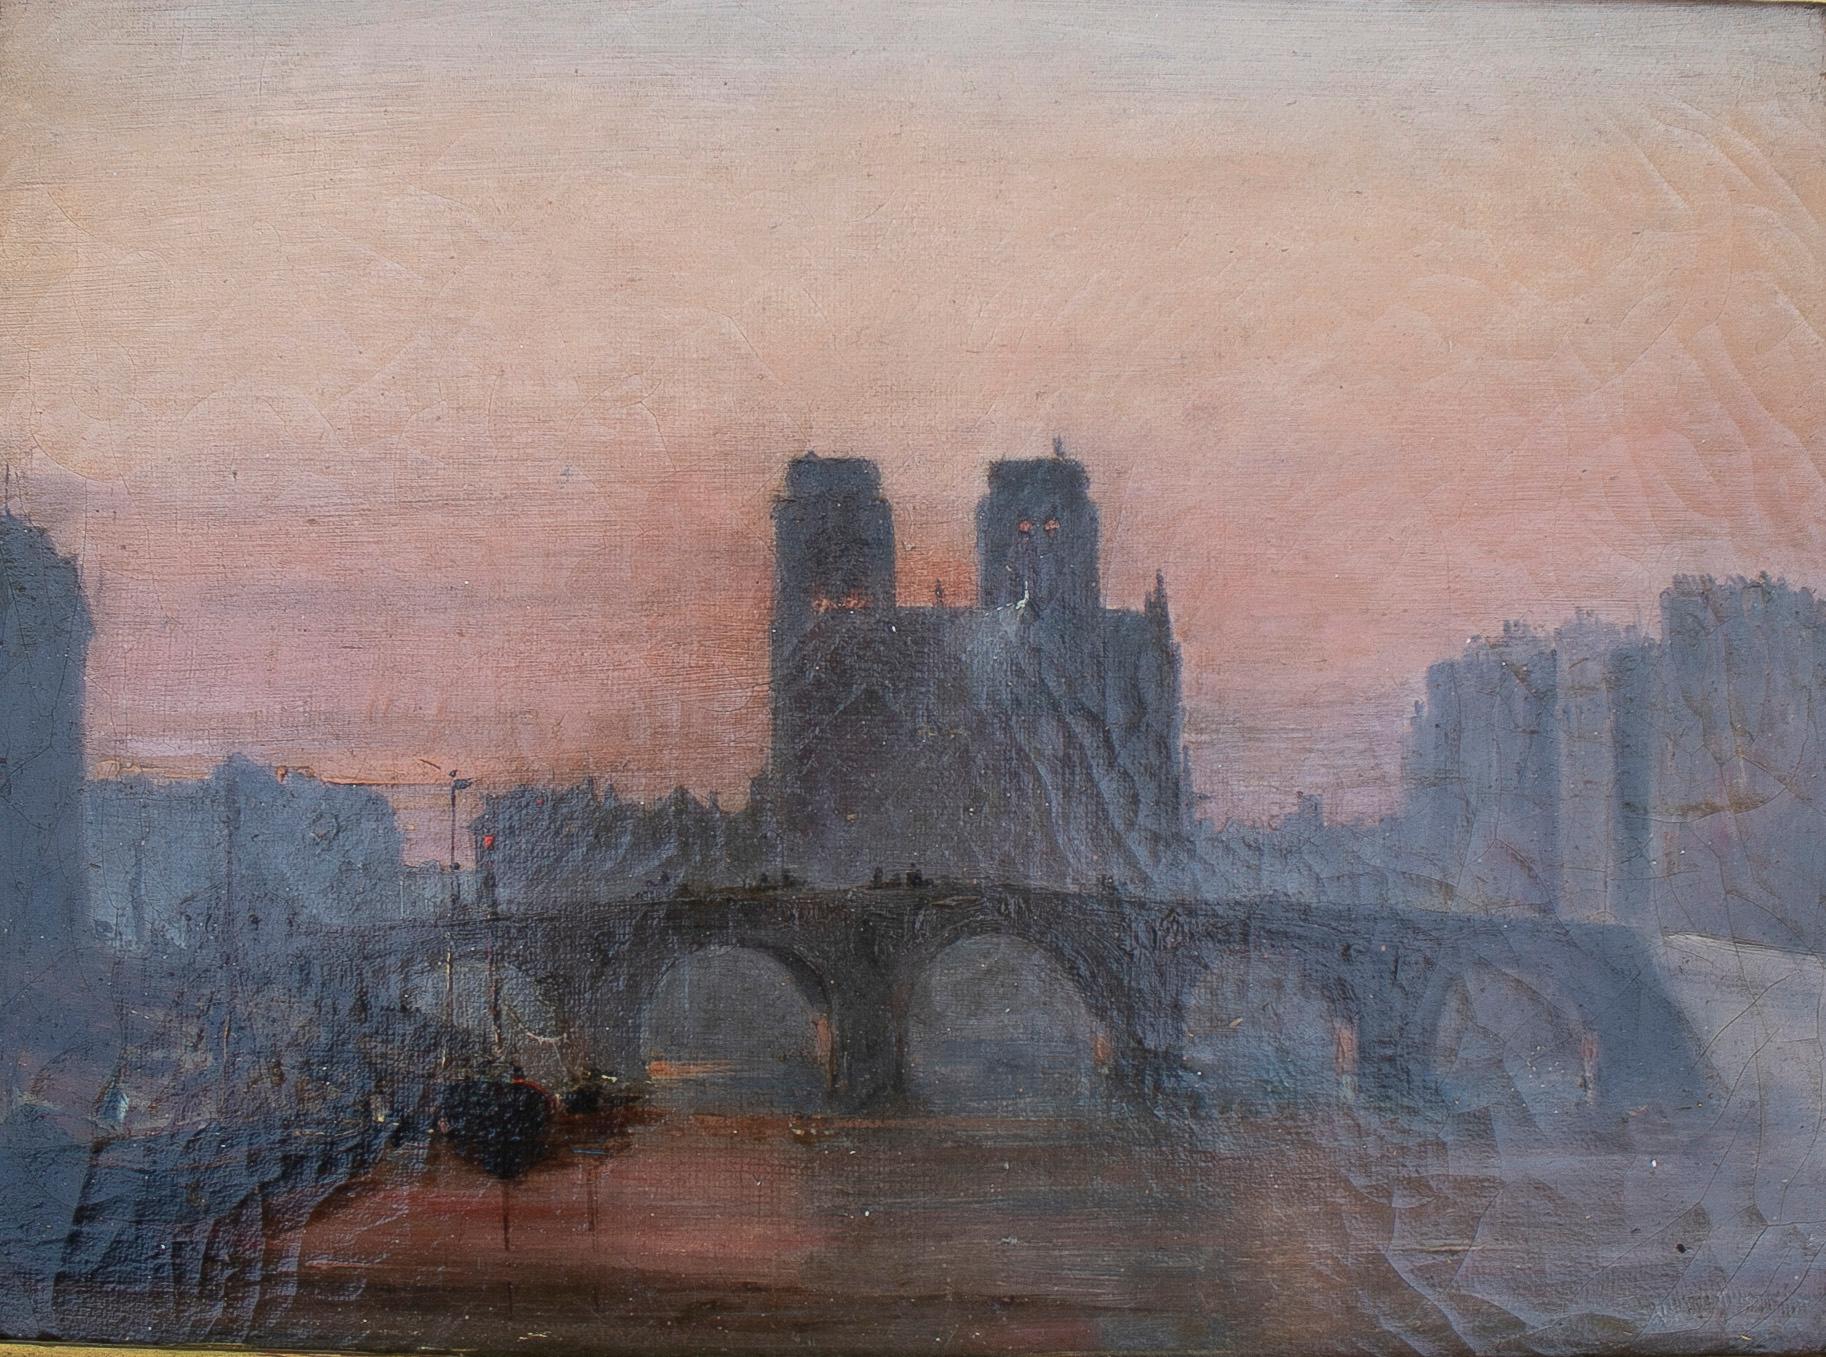 Peinture originale d'un paysage parisien impressionniste français du 19ème siècle, avec la rivière Senna et Notre Dame.

Dimensions avec cadre : 47 x 38 x 5 cm.